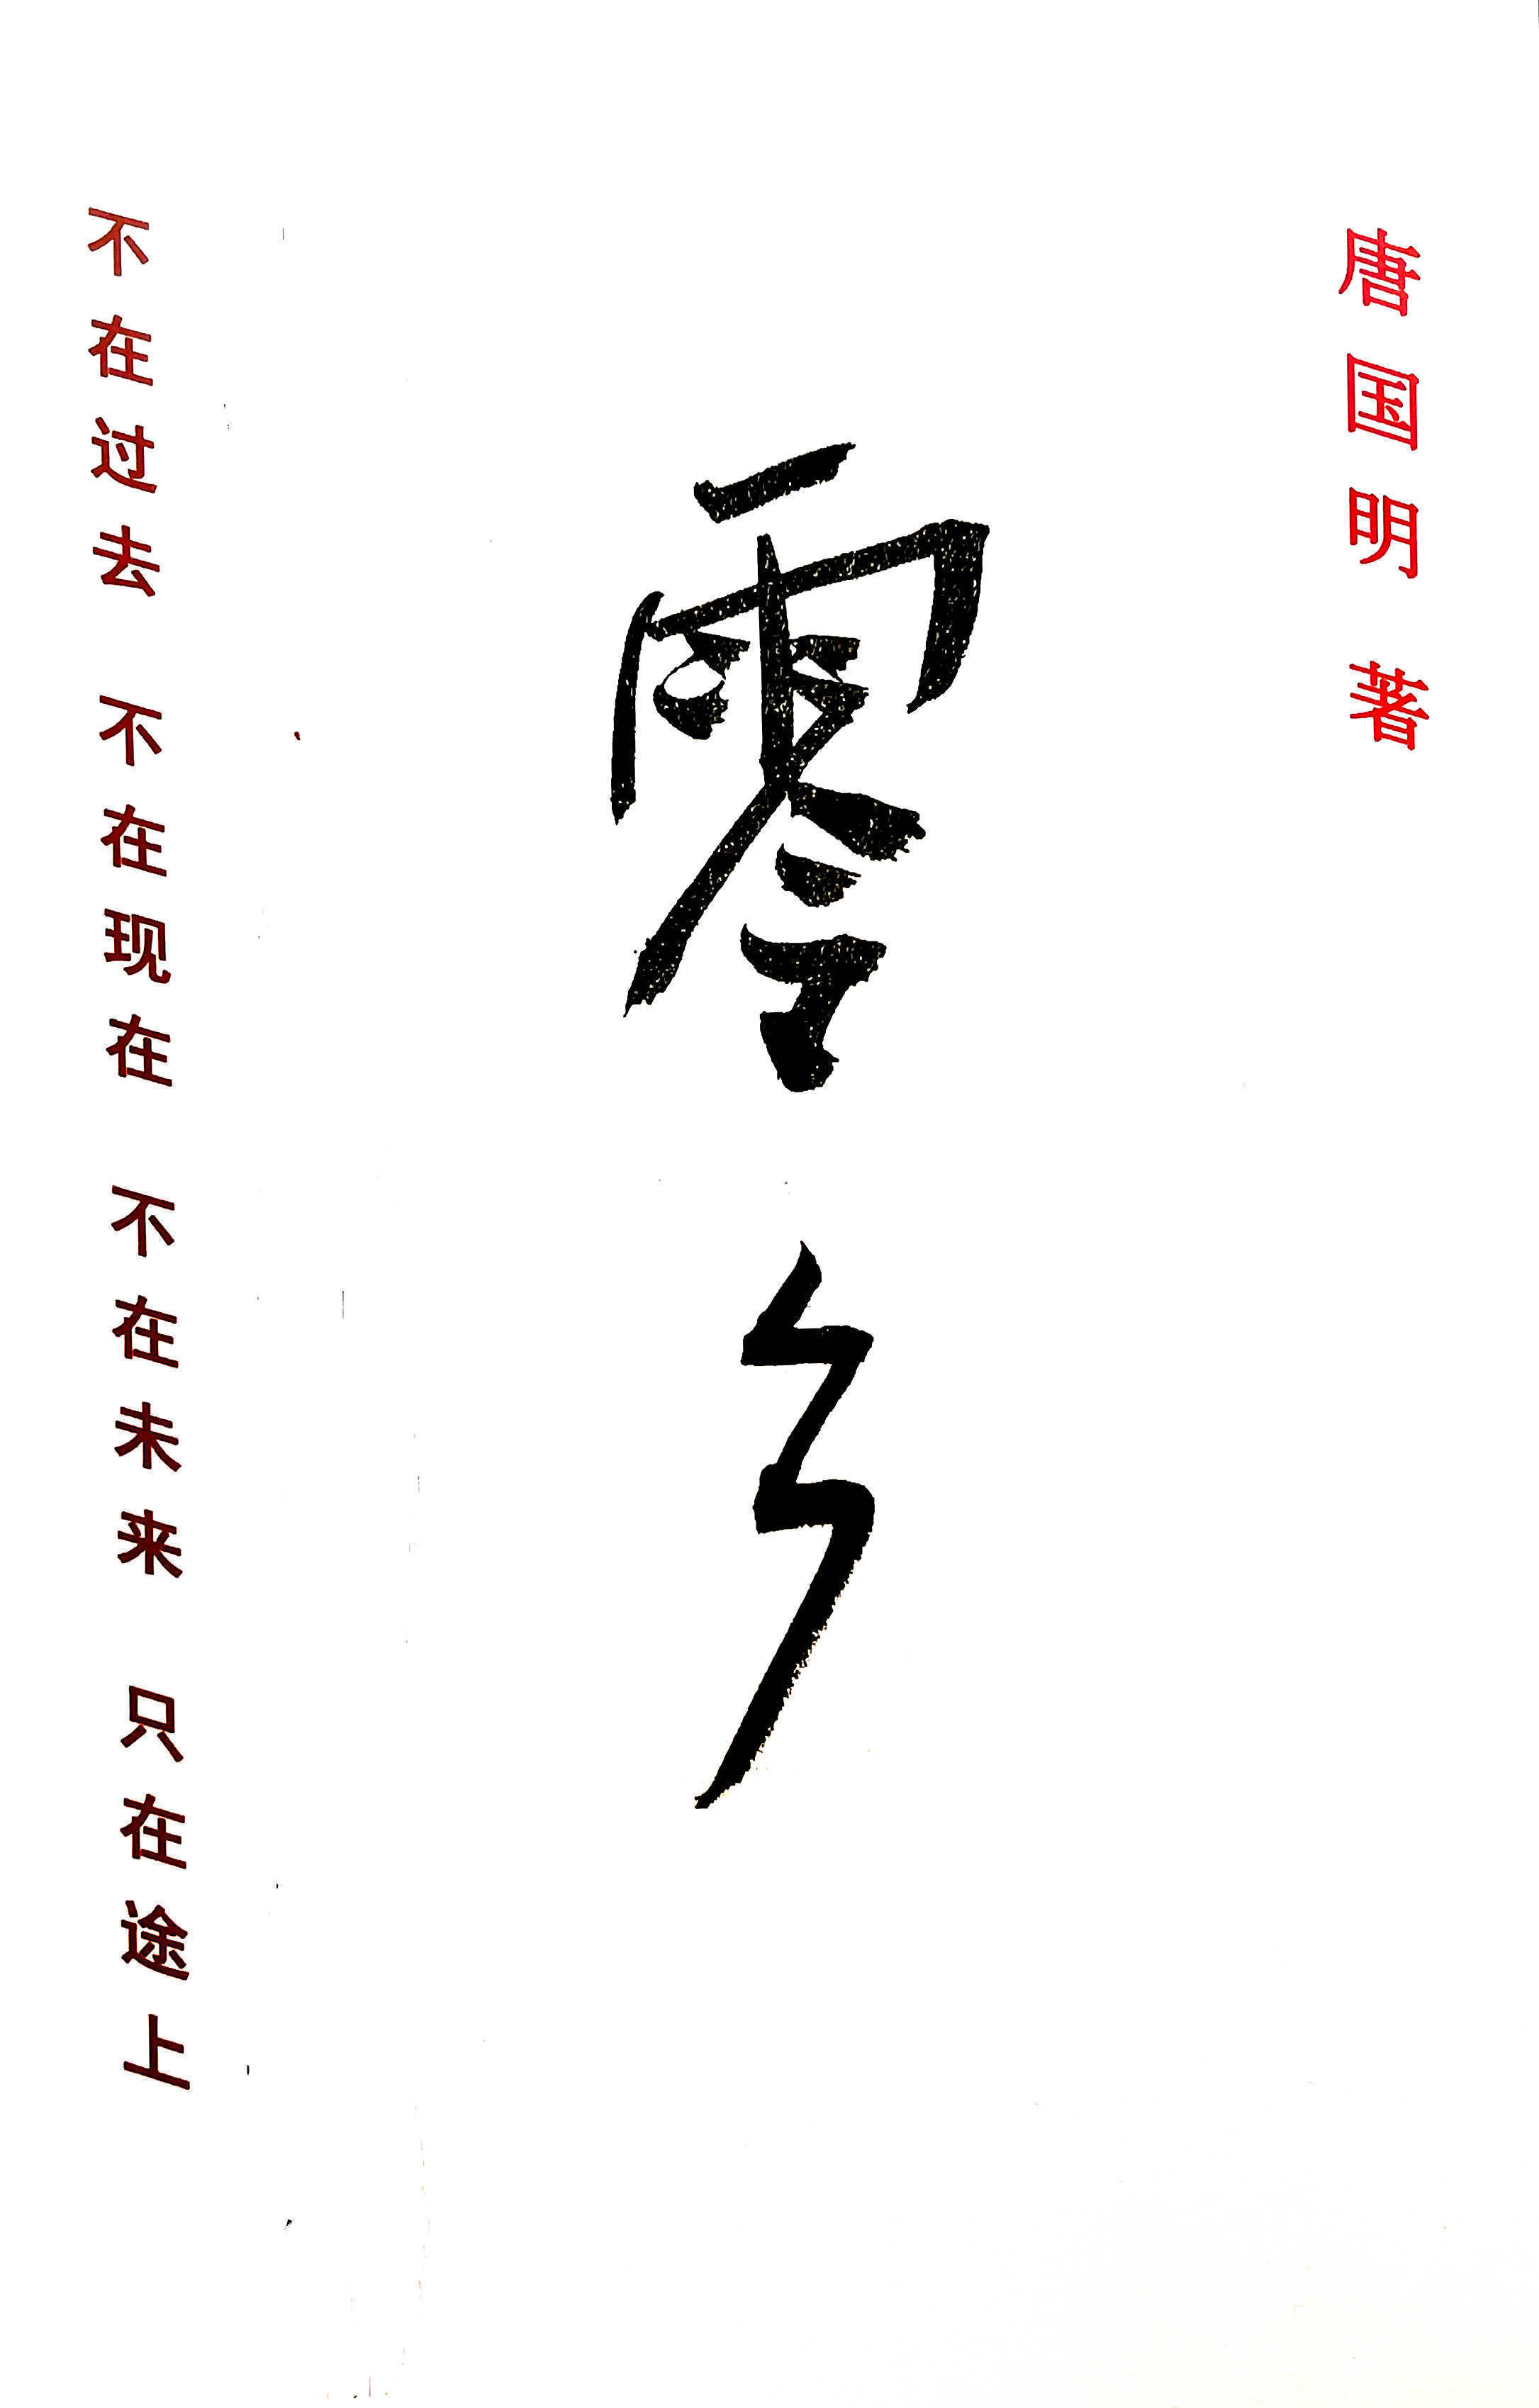 渴望爱情的著名作家唐国明，给未来孩子与妻子写了这样的一封信